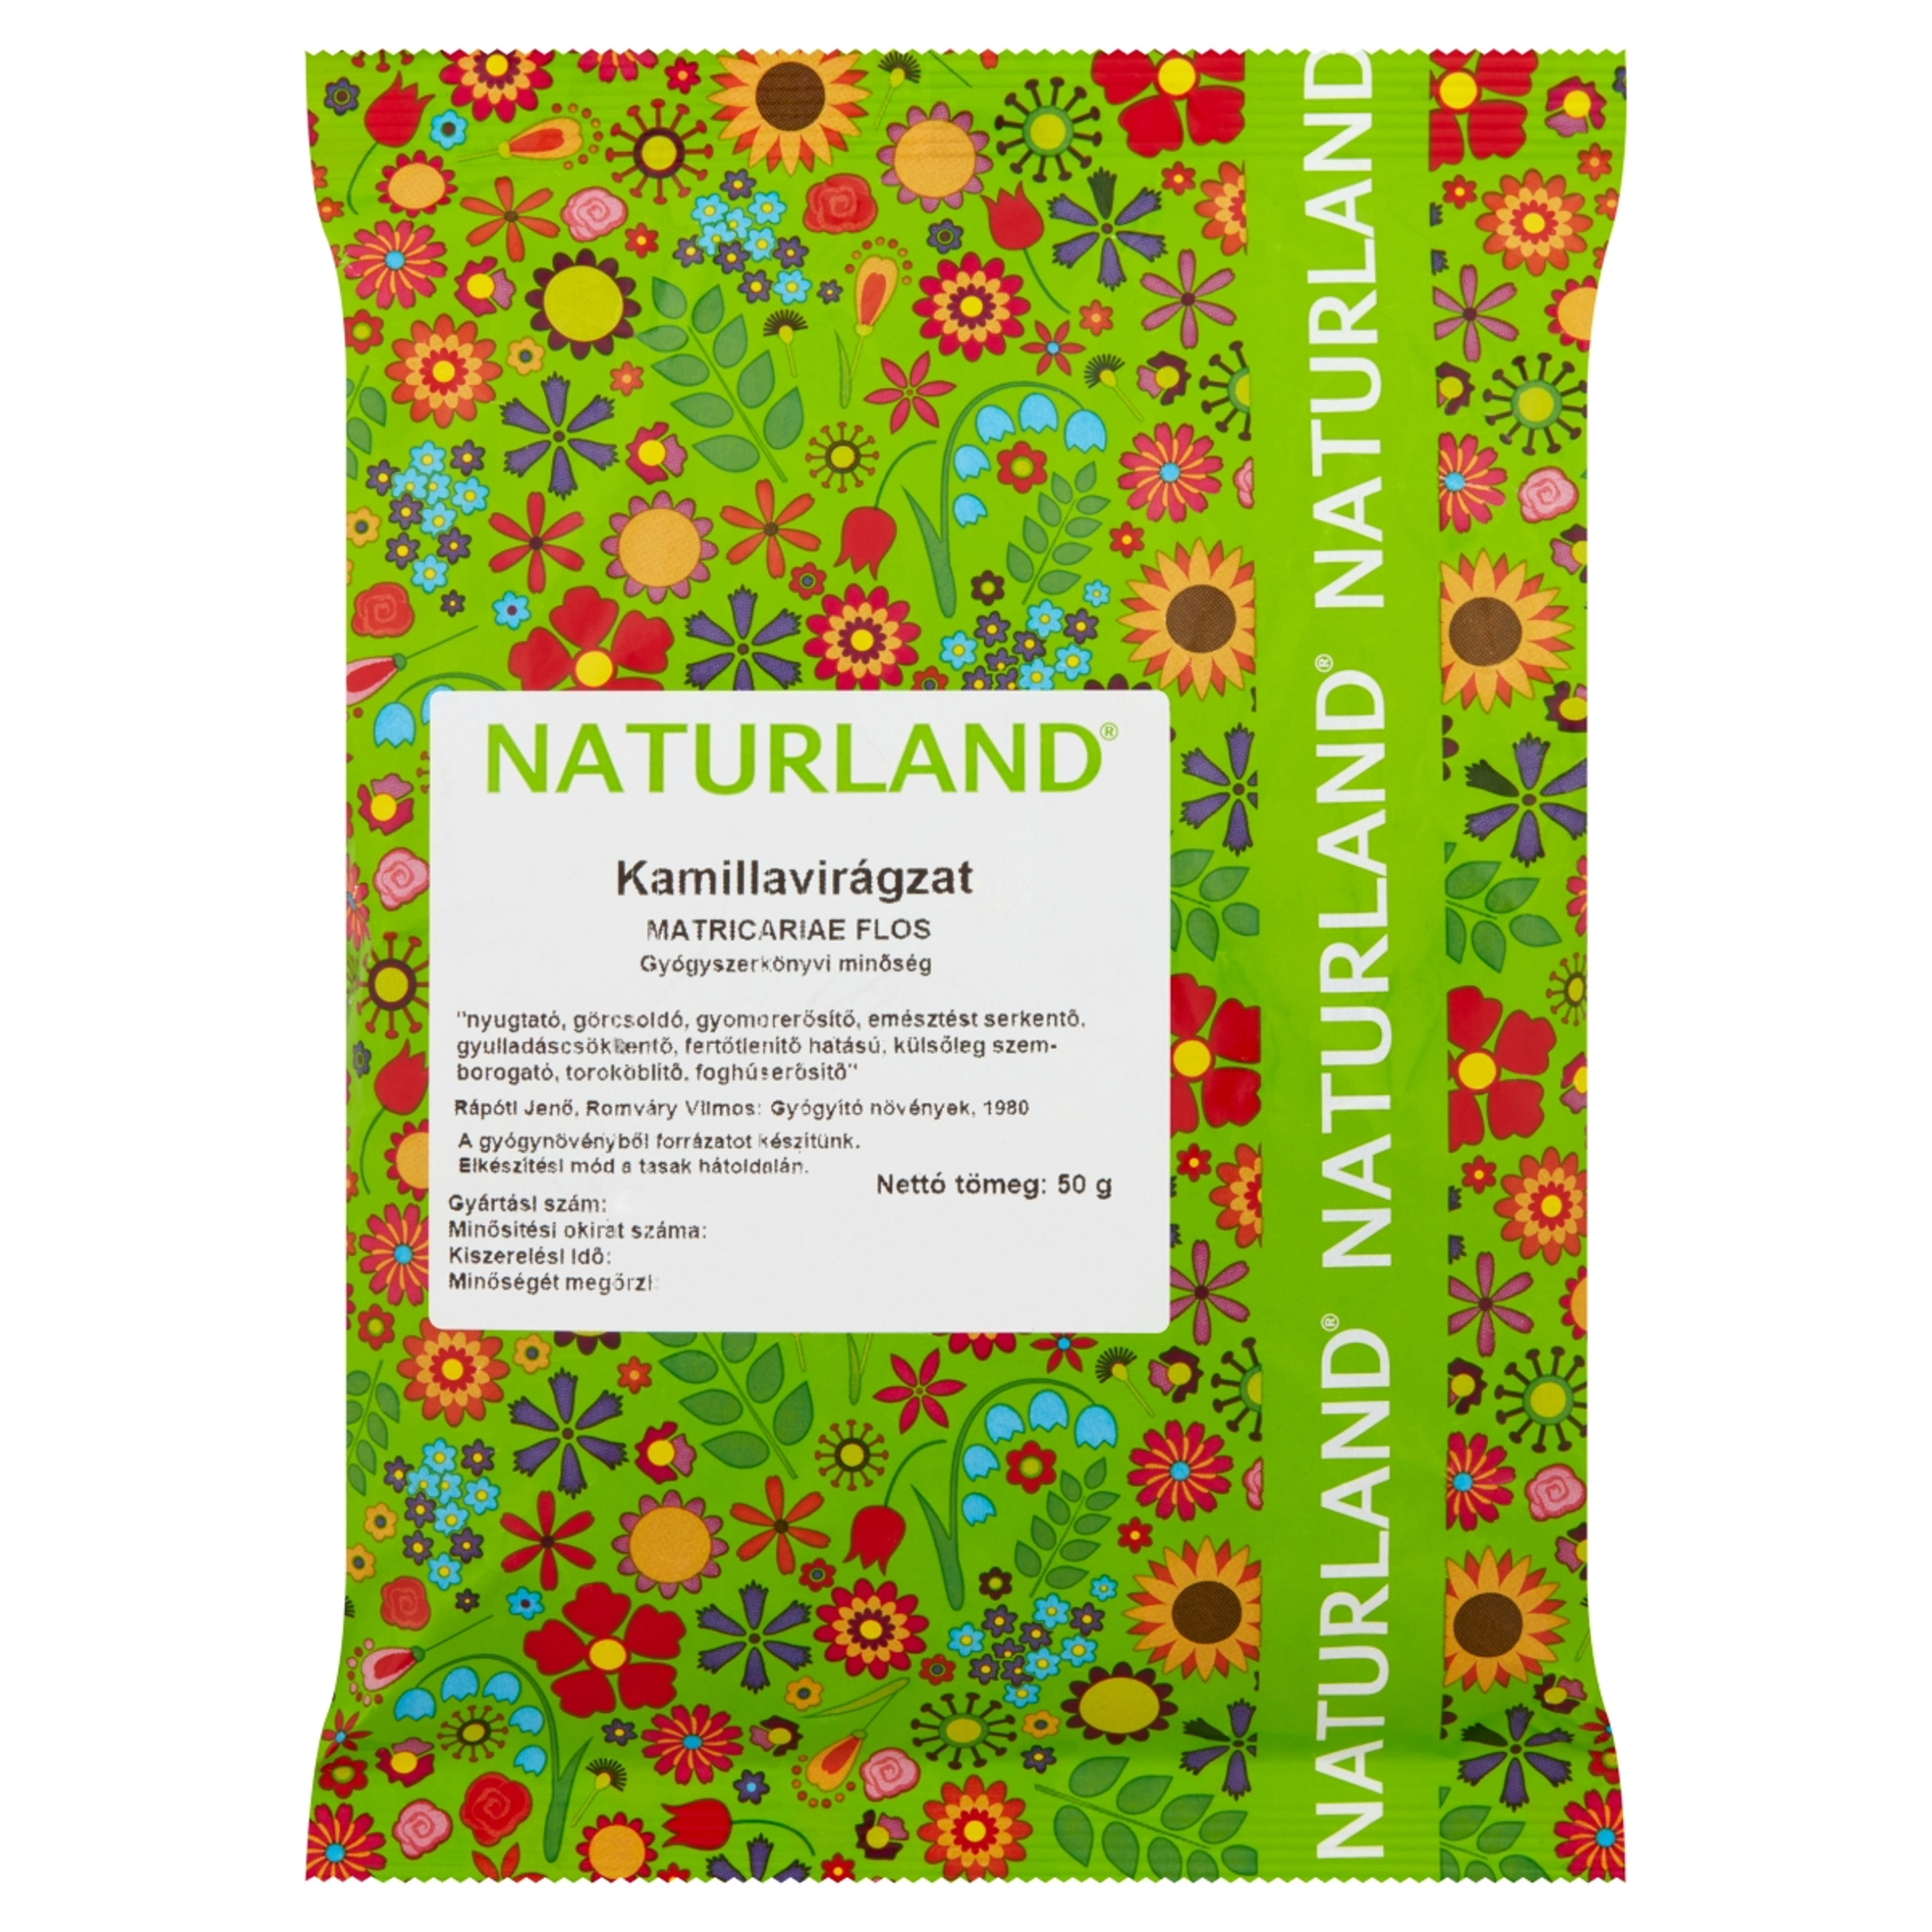 Naturland tasakos Kamillavirágzat tea - 50 g